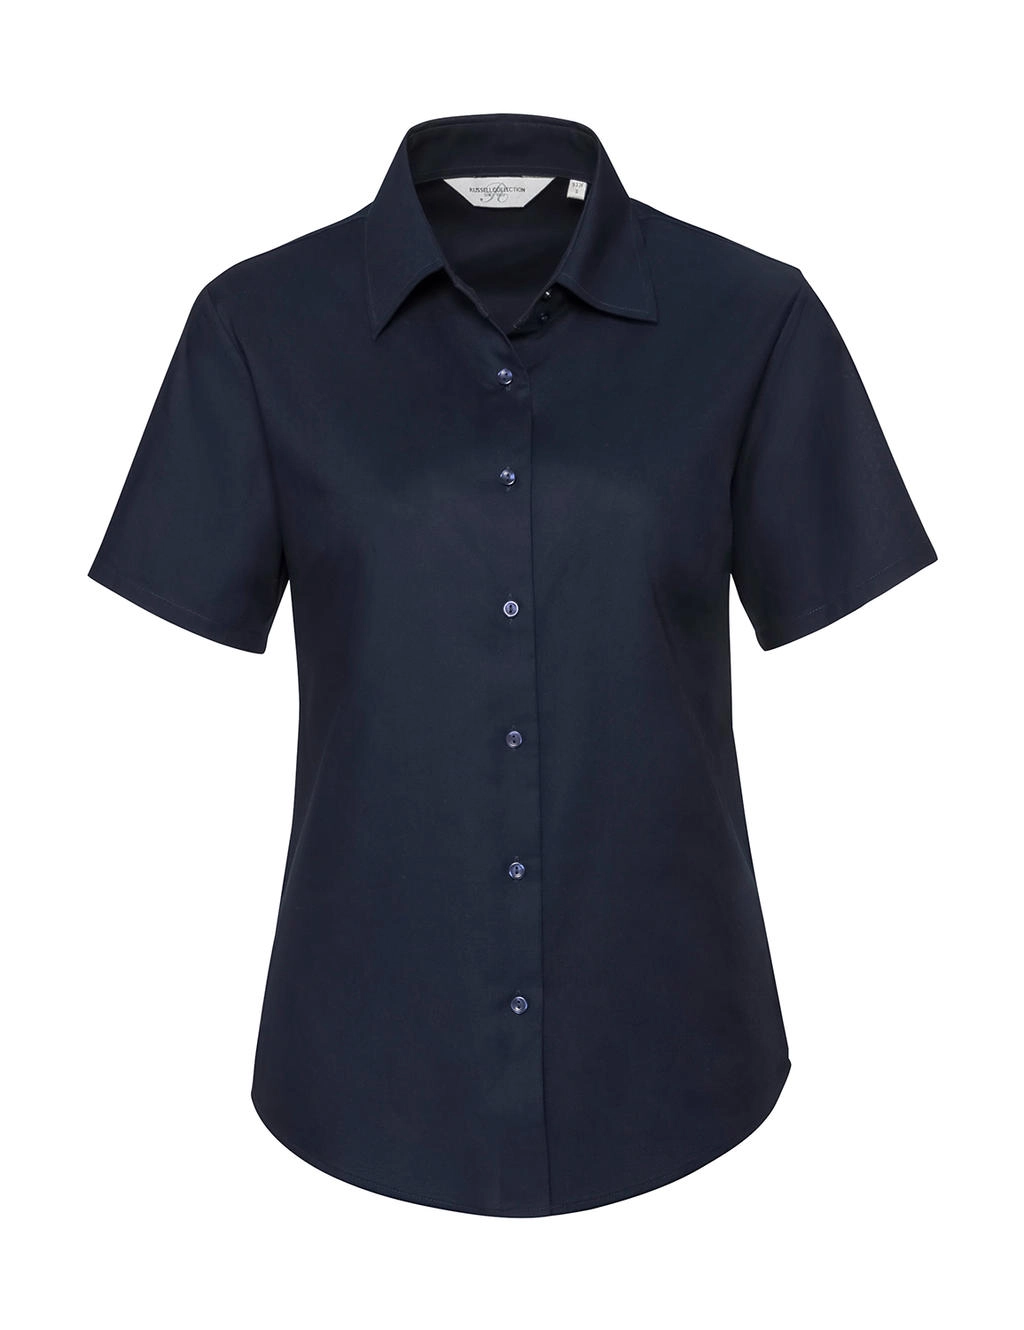 Ladies` Classic Oxford Shirt zum Besticken und Bedrucken in der Farbe Bright Navy mit Ihren Logo, Schriftzug oder Motiv.